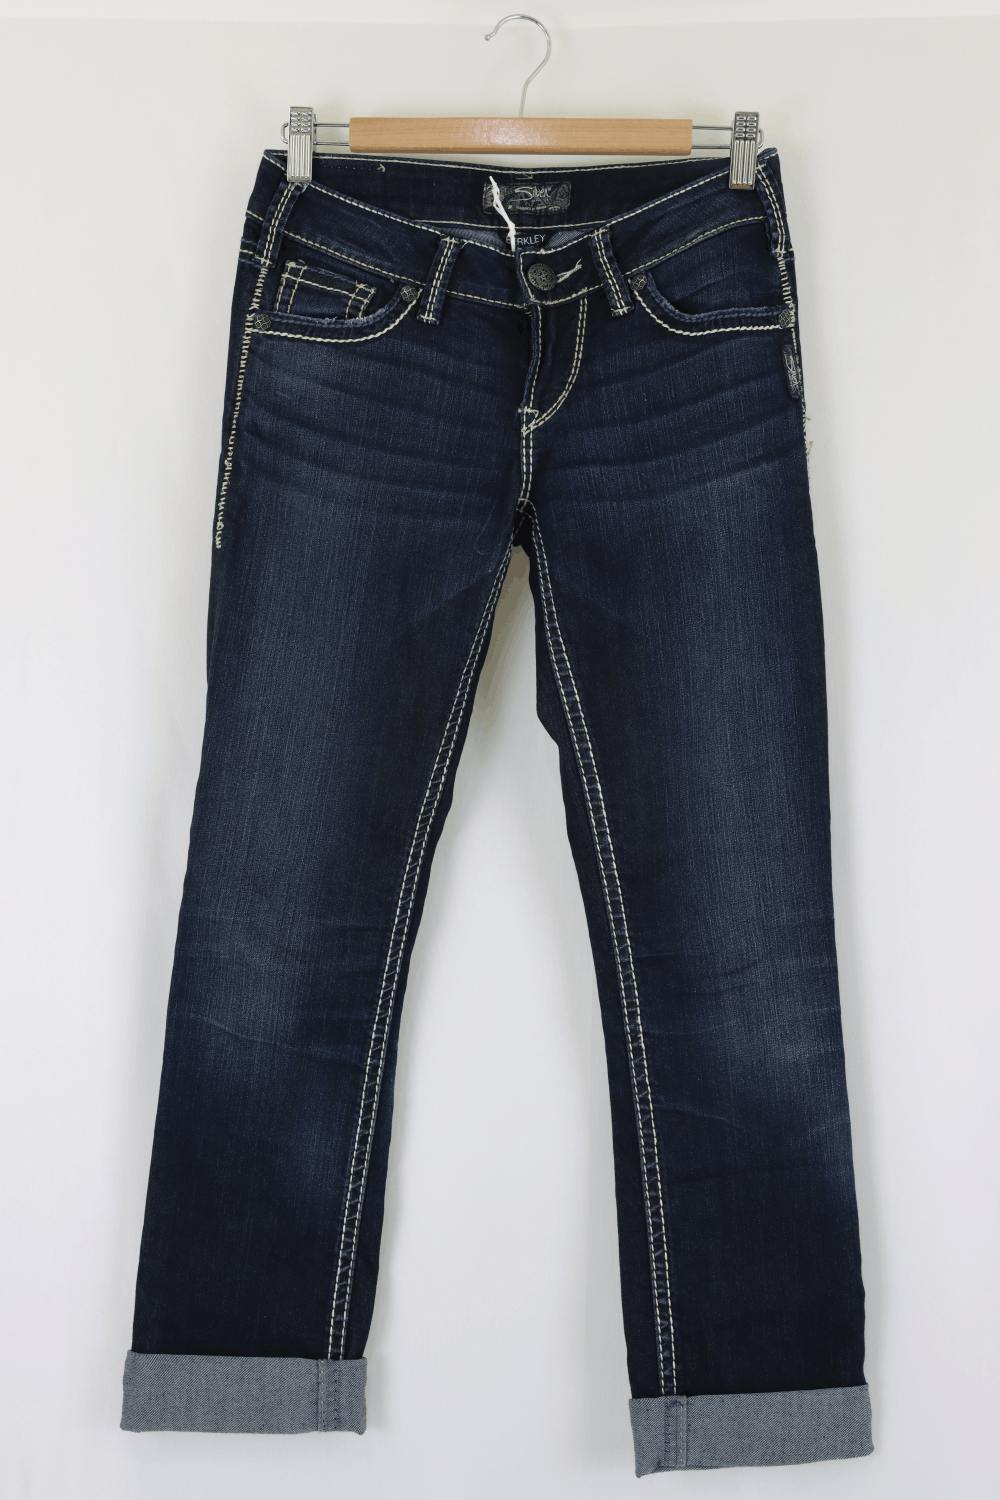 Berkley Low Rise Jeans 26